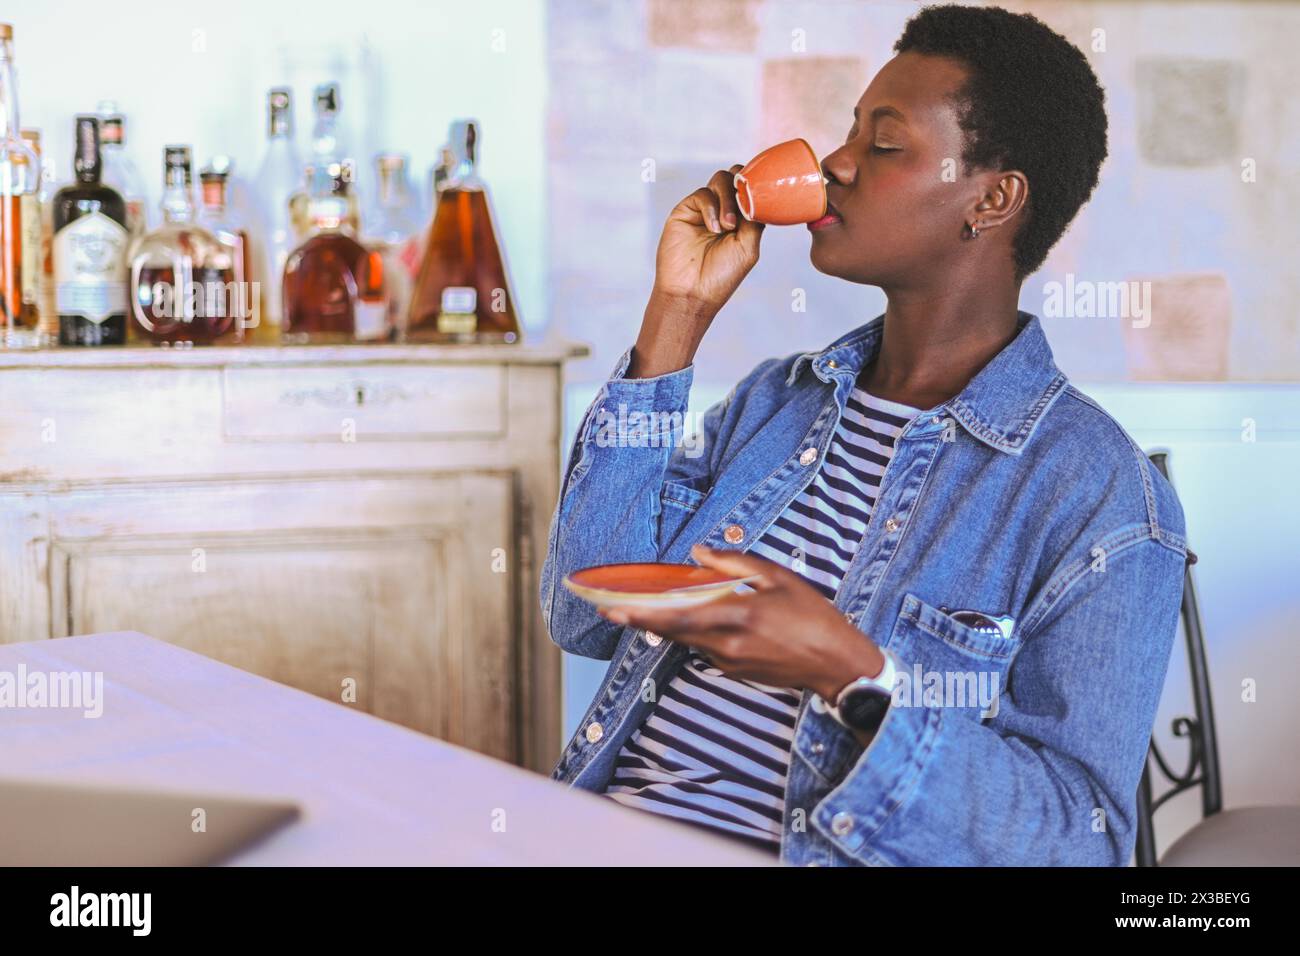 Femme de contenu buvant dans une tasse à espresso dans un cadre de restaurant relaxant Banque D'Images